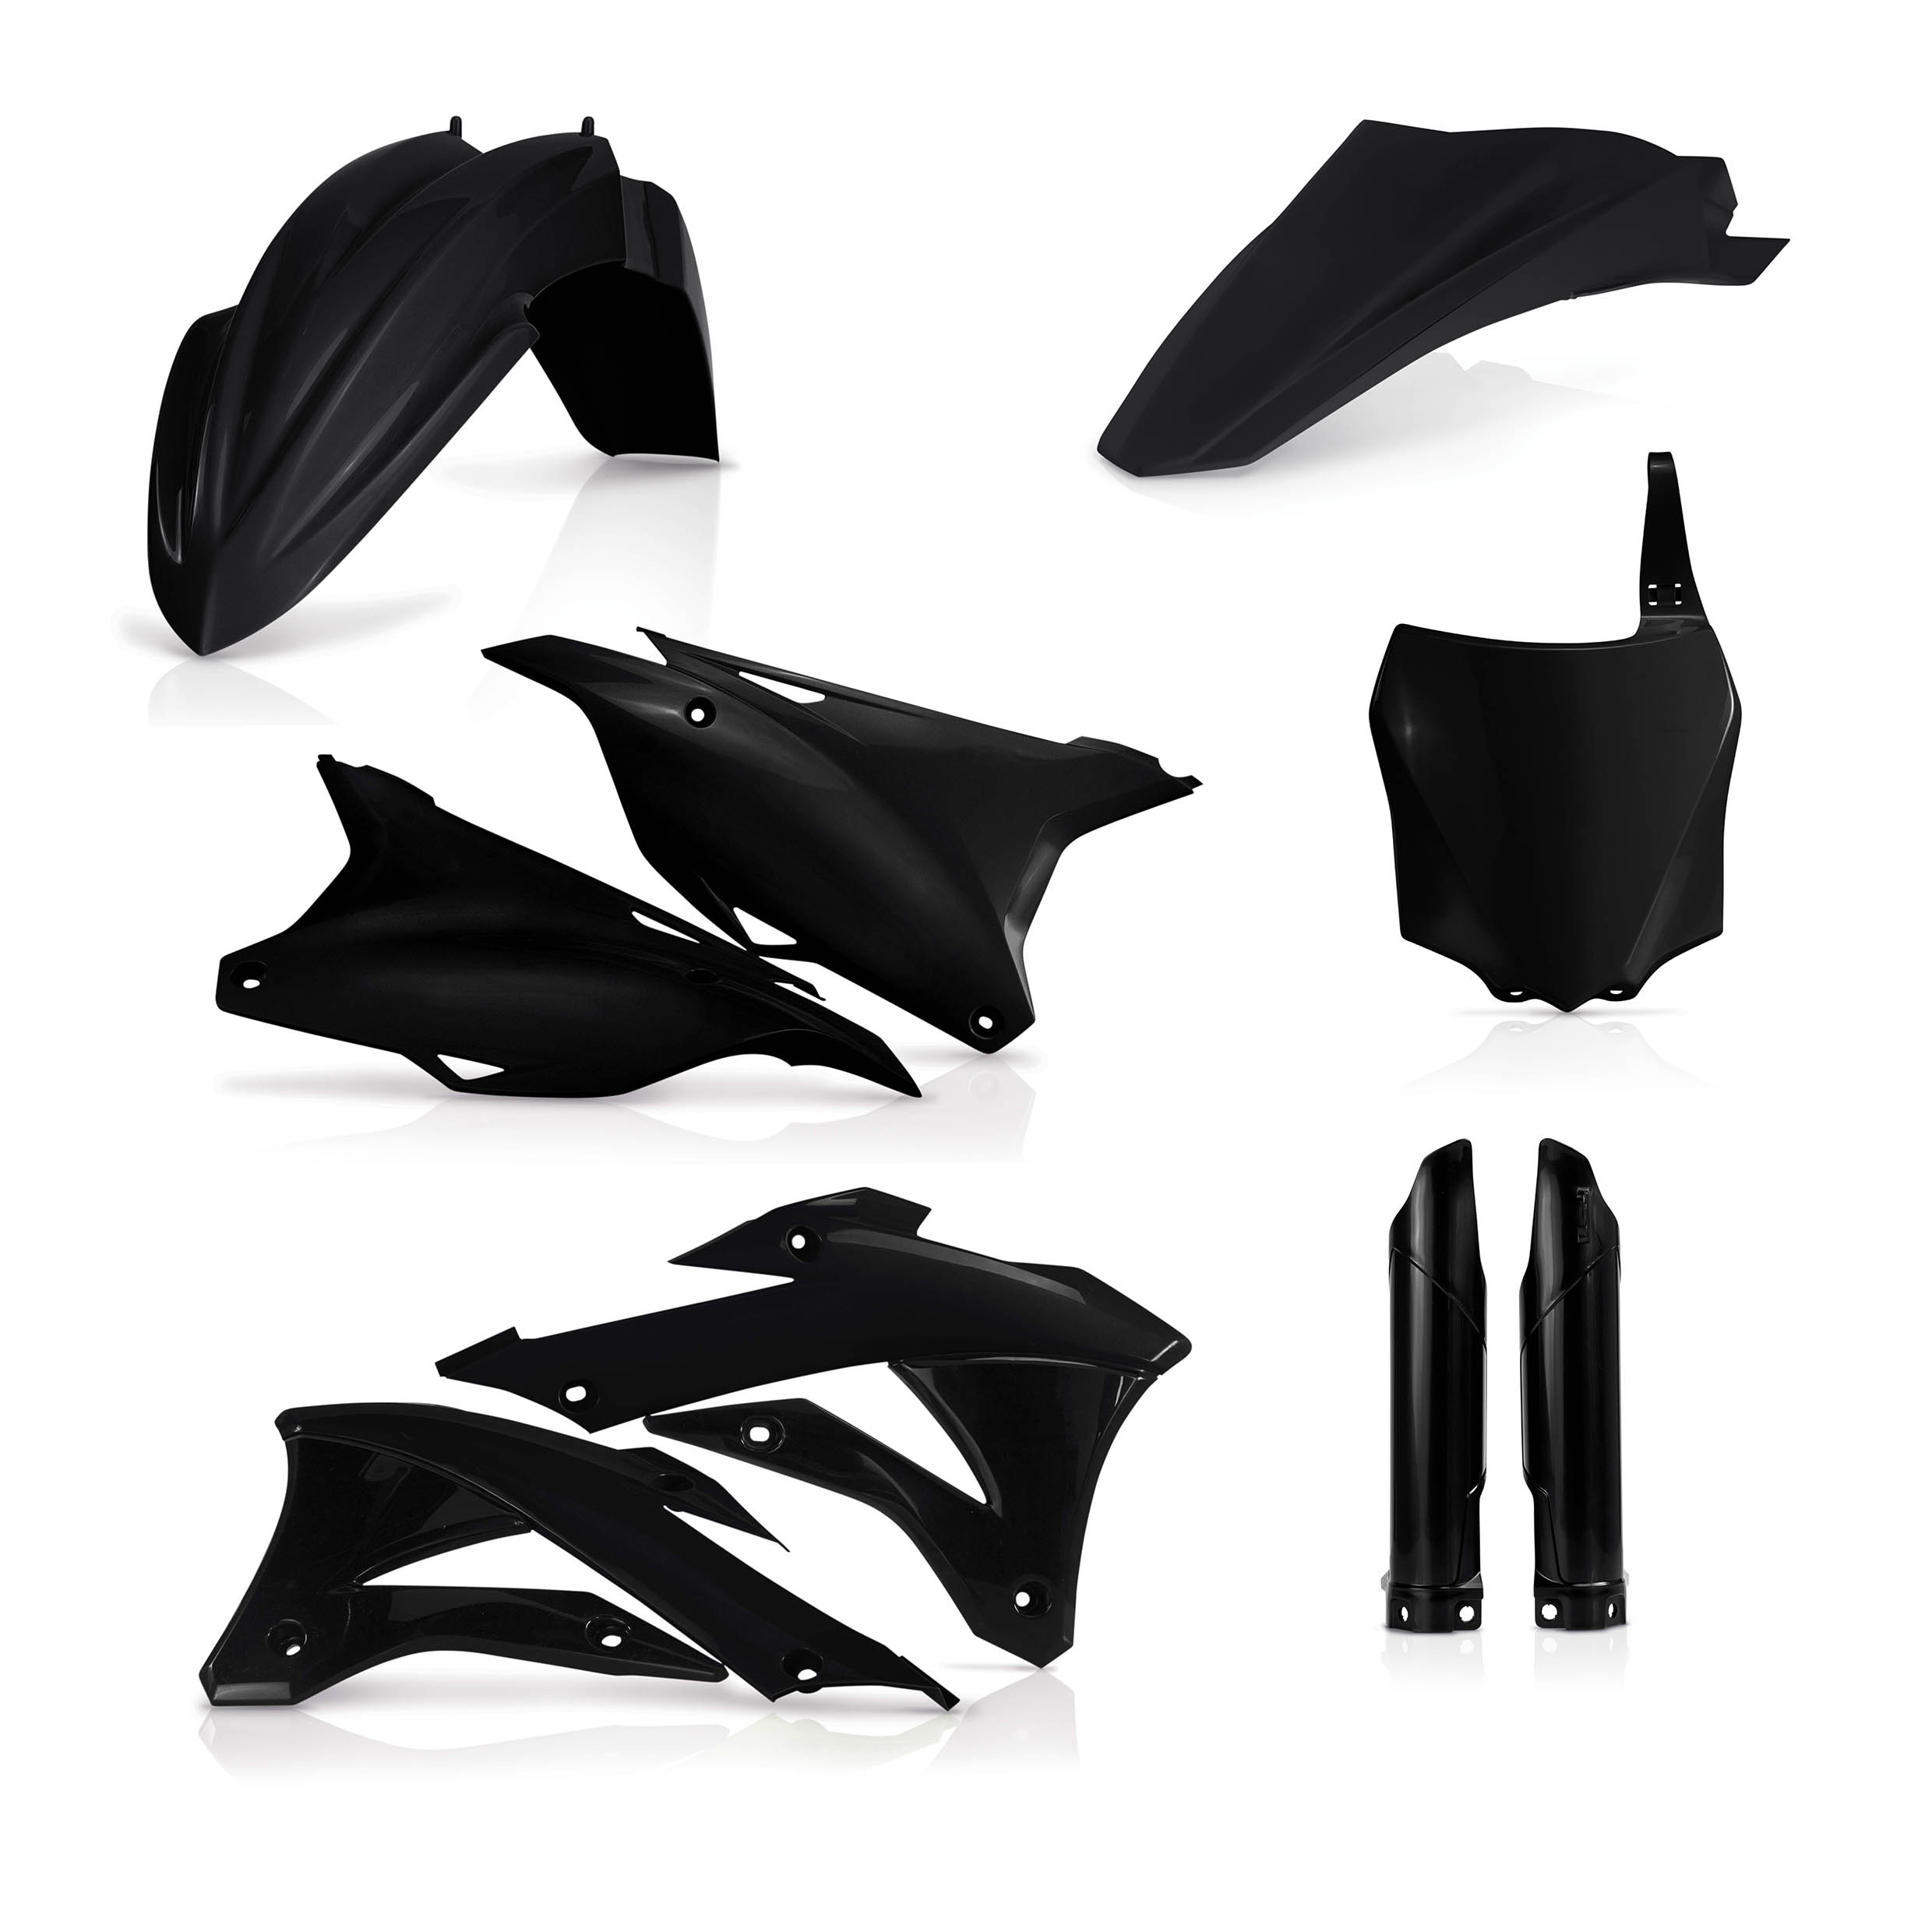 Plastikteile für deine Kawasaki KX 85-100 in schwarz bestehend aus Kotflügel vorn Kotflügel hinten Kühlerspoiler Seitenteile Gabelschützer Startnummerntafel